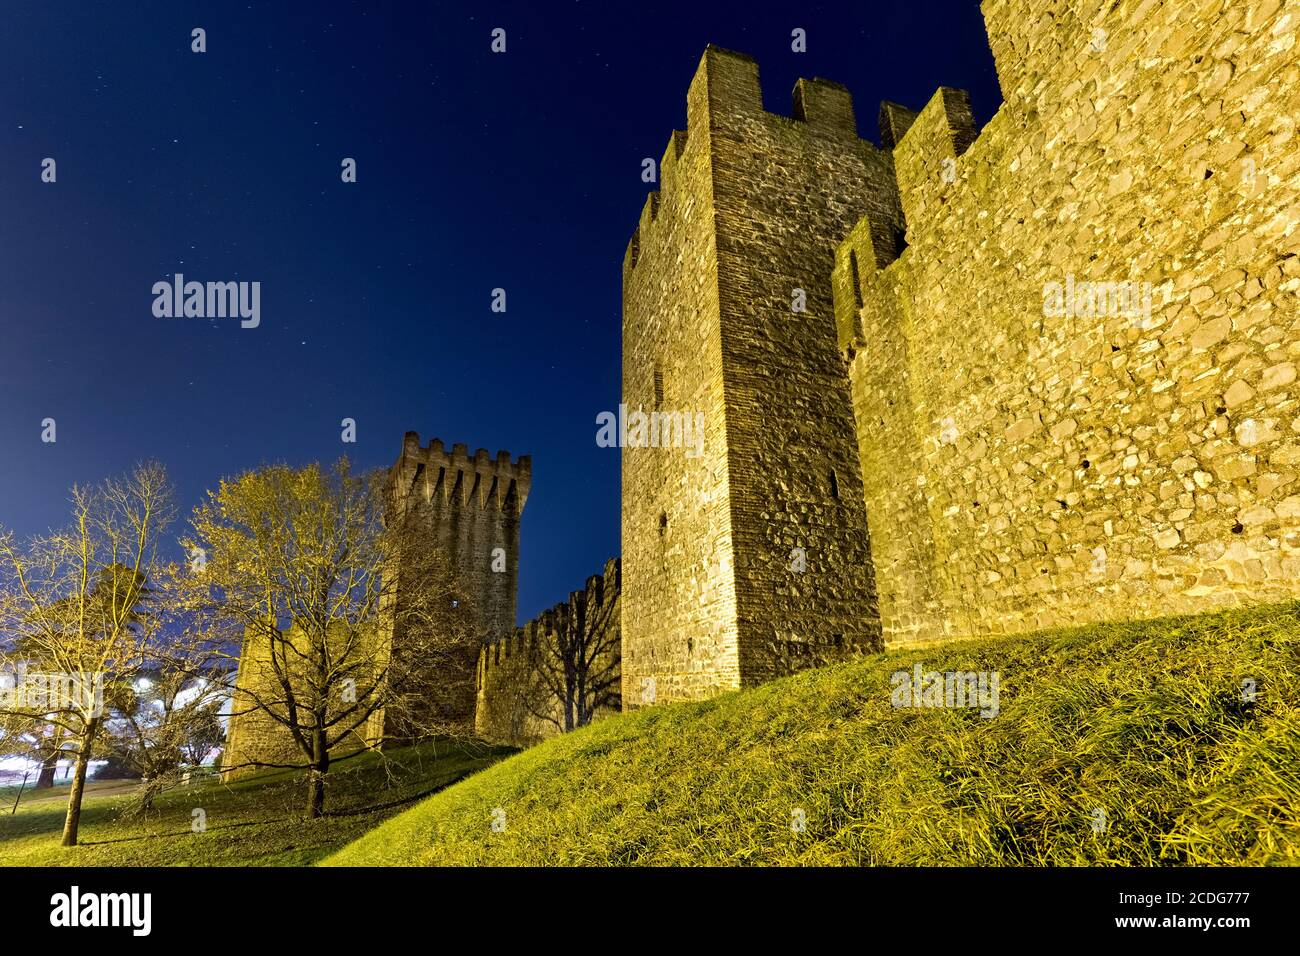 Notte di luna piena sulle mura medievali del castello carraese in Este. Provincia di Padova, Veneto, Italia, Europa. Foto Stock